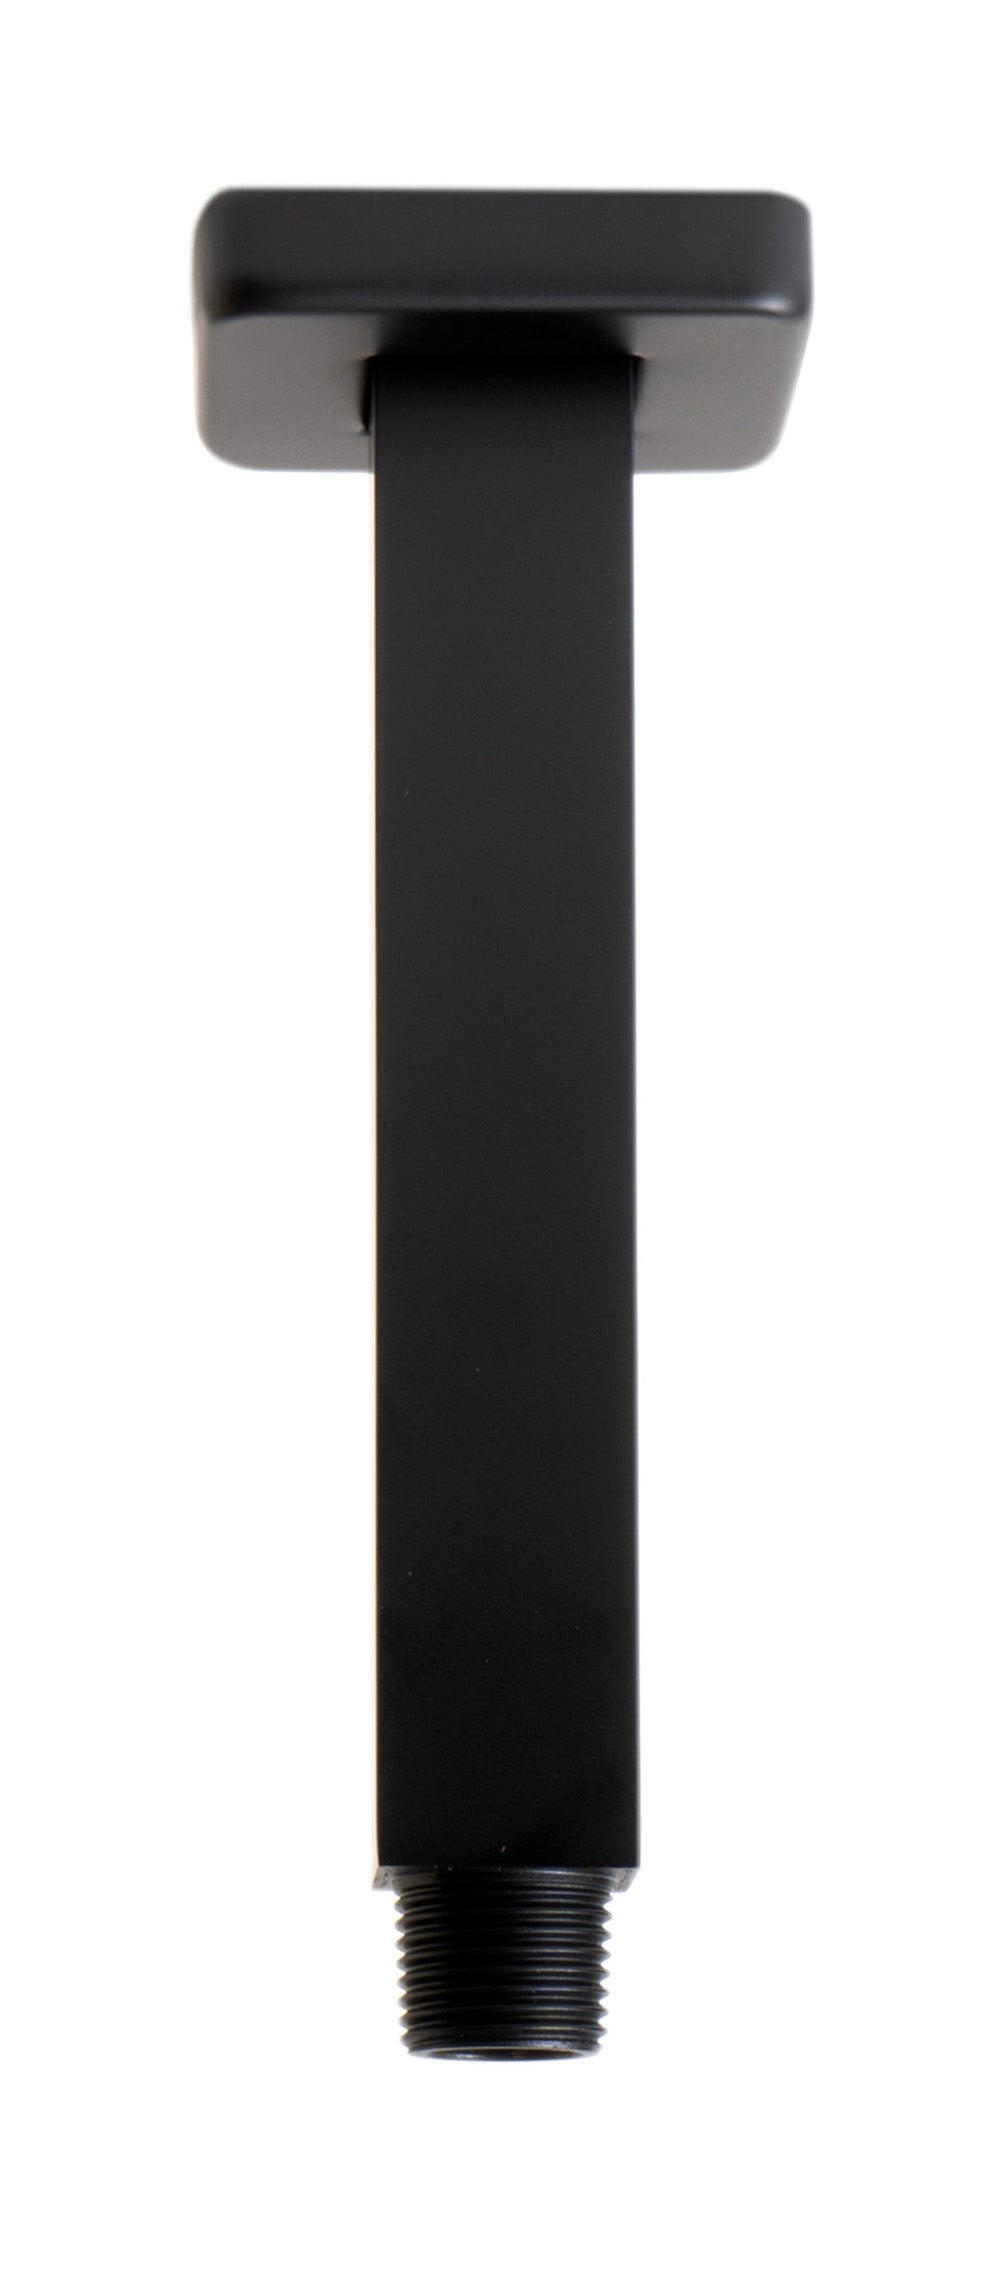 Black Matte 6" Square Ceiling Shower Arm